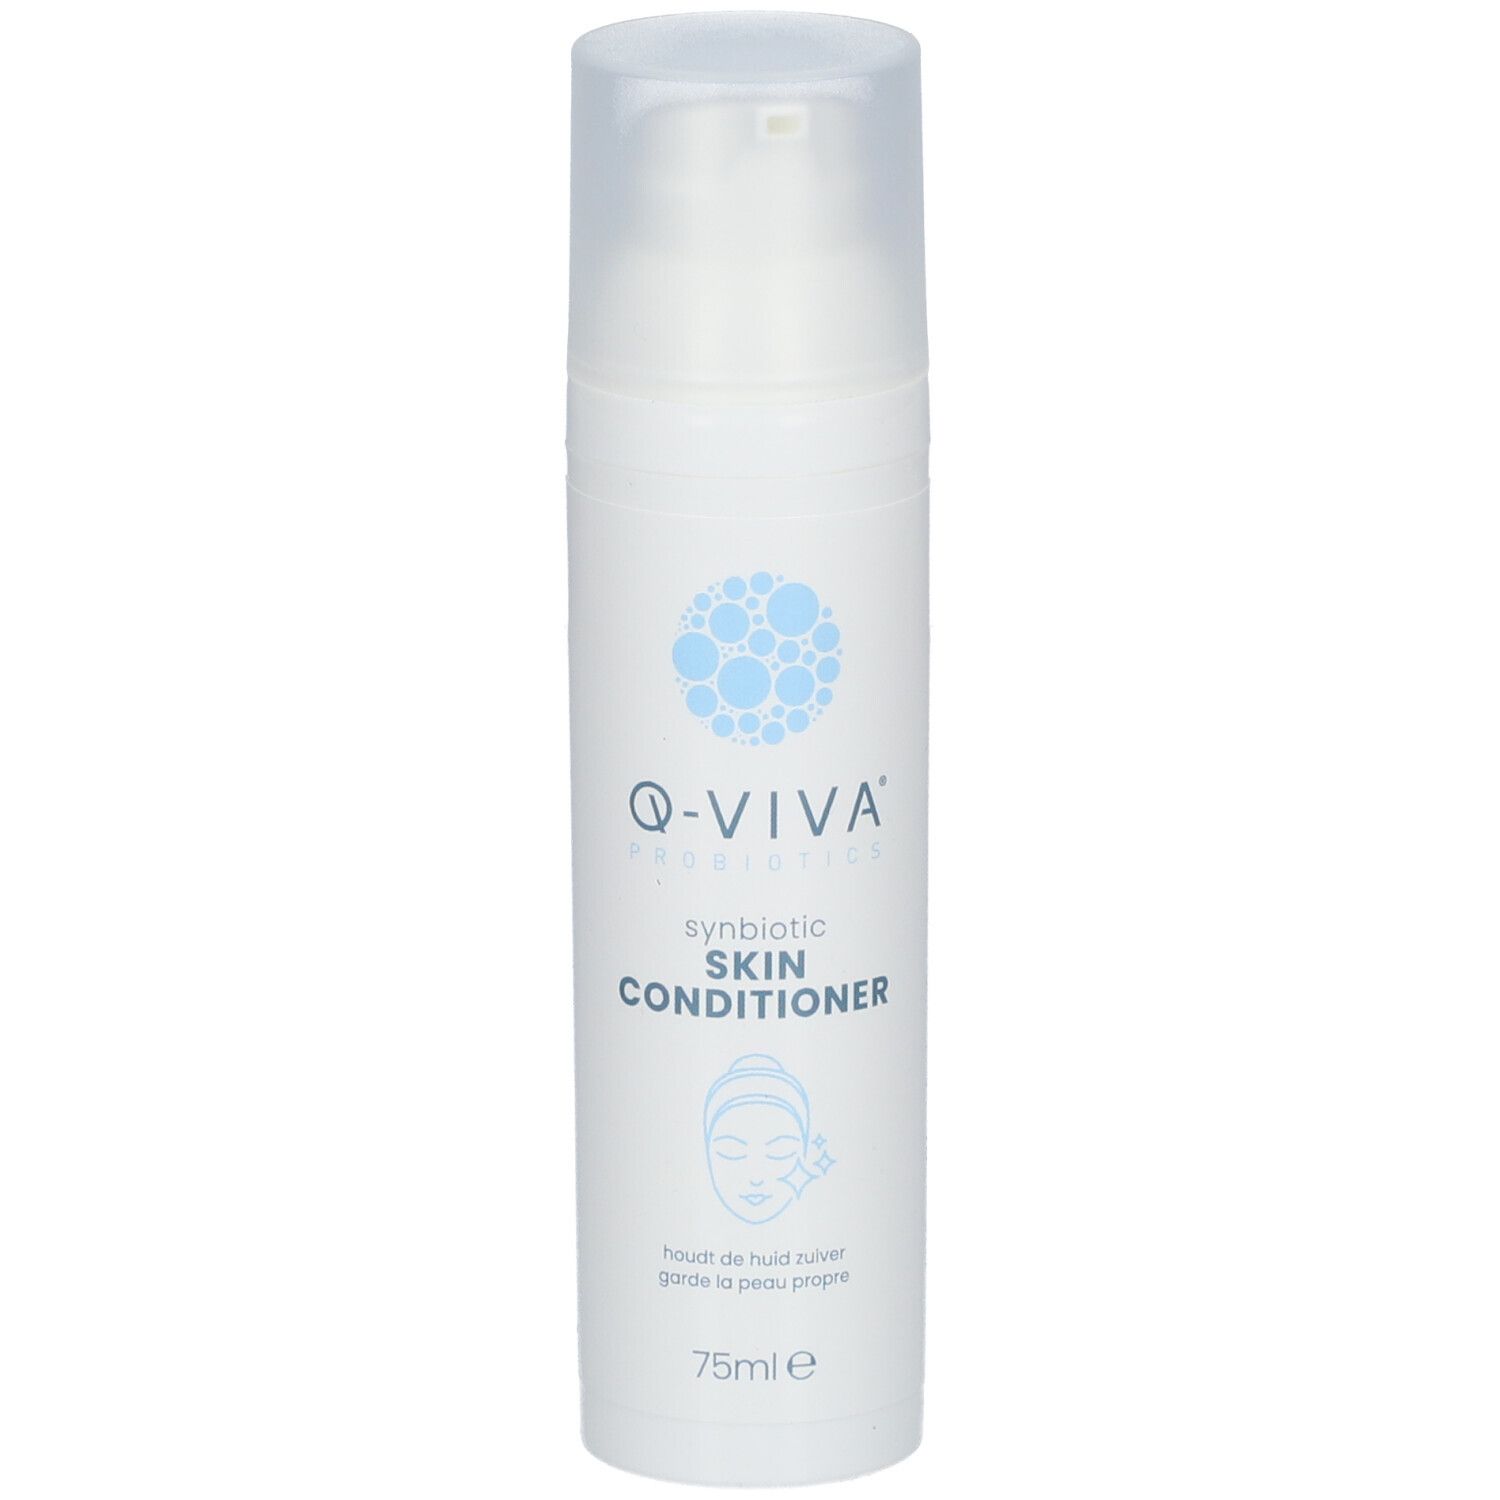 Q-Viva Synbiotic Skin Conditioner